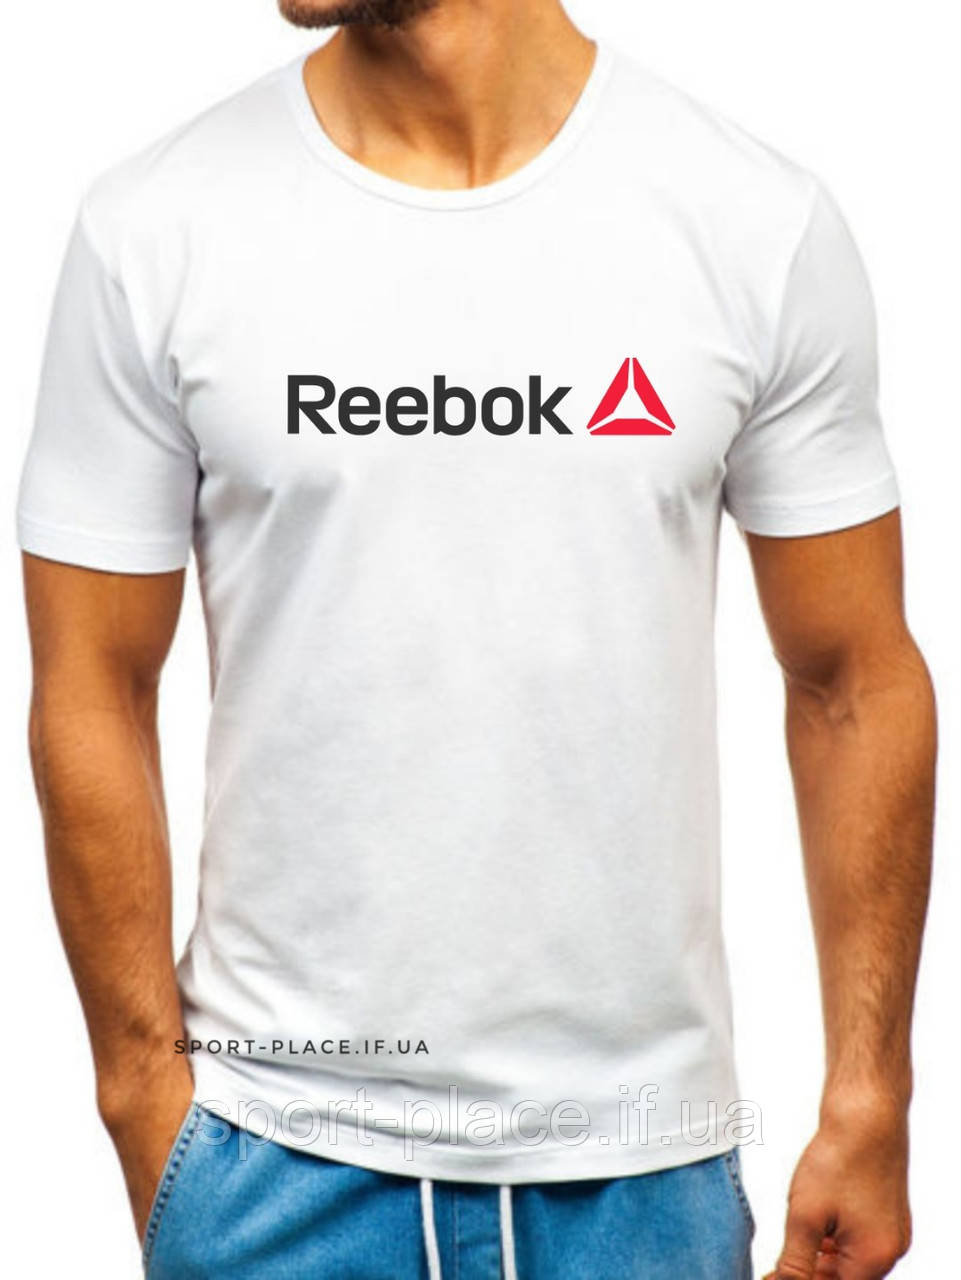 Чоловіча футболка Reebok (Рібок) біла (велика емблема) бавовна